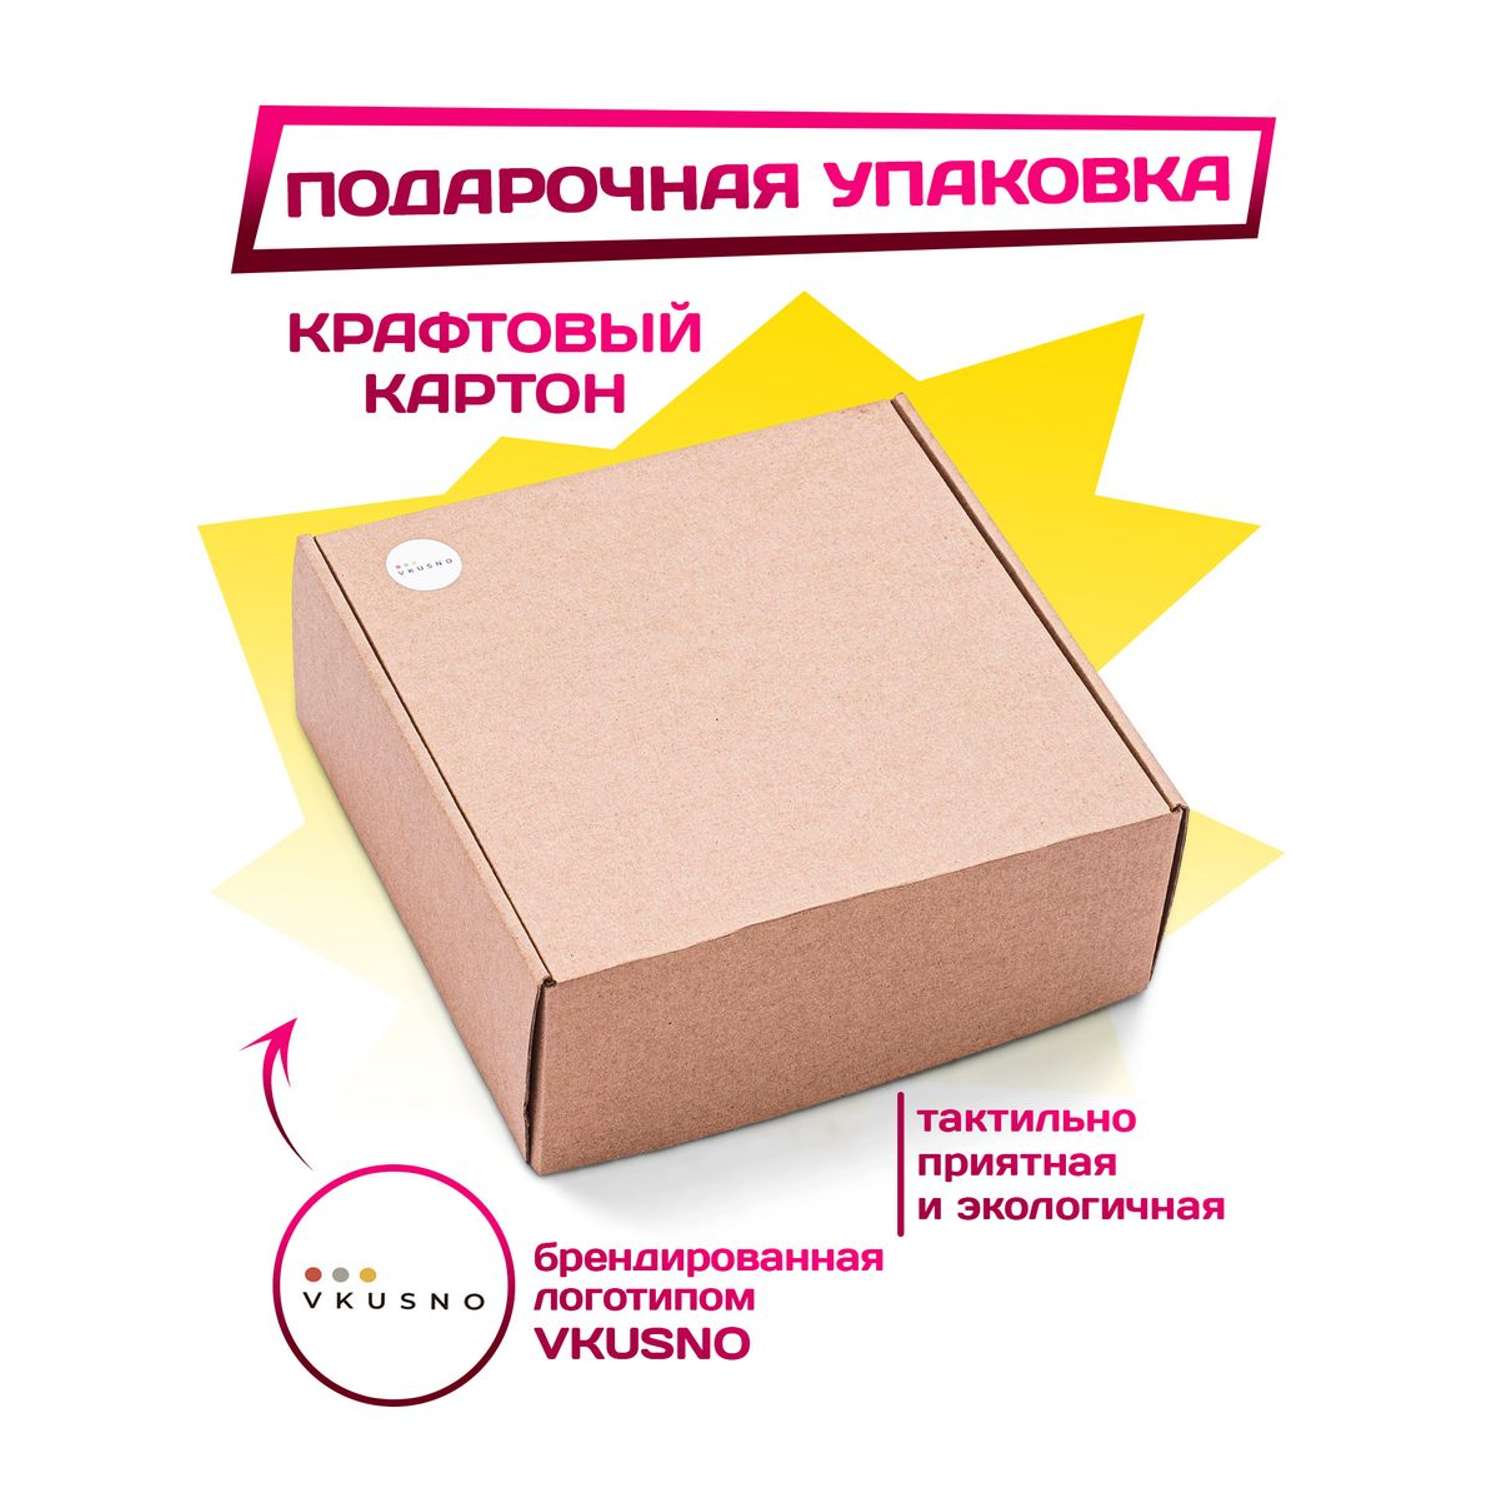 Сладкий набор VKUSNODAY подарочный 85 конфет - фото 3